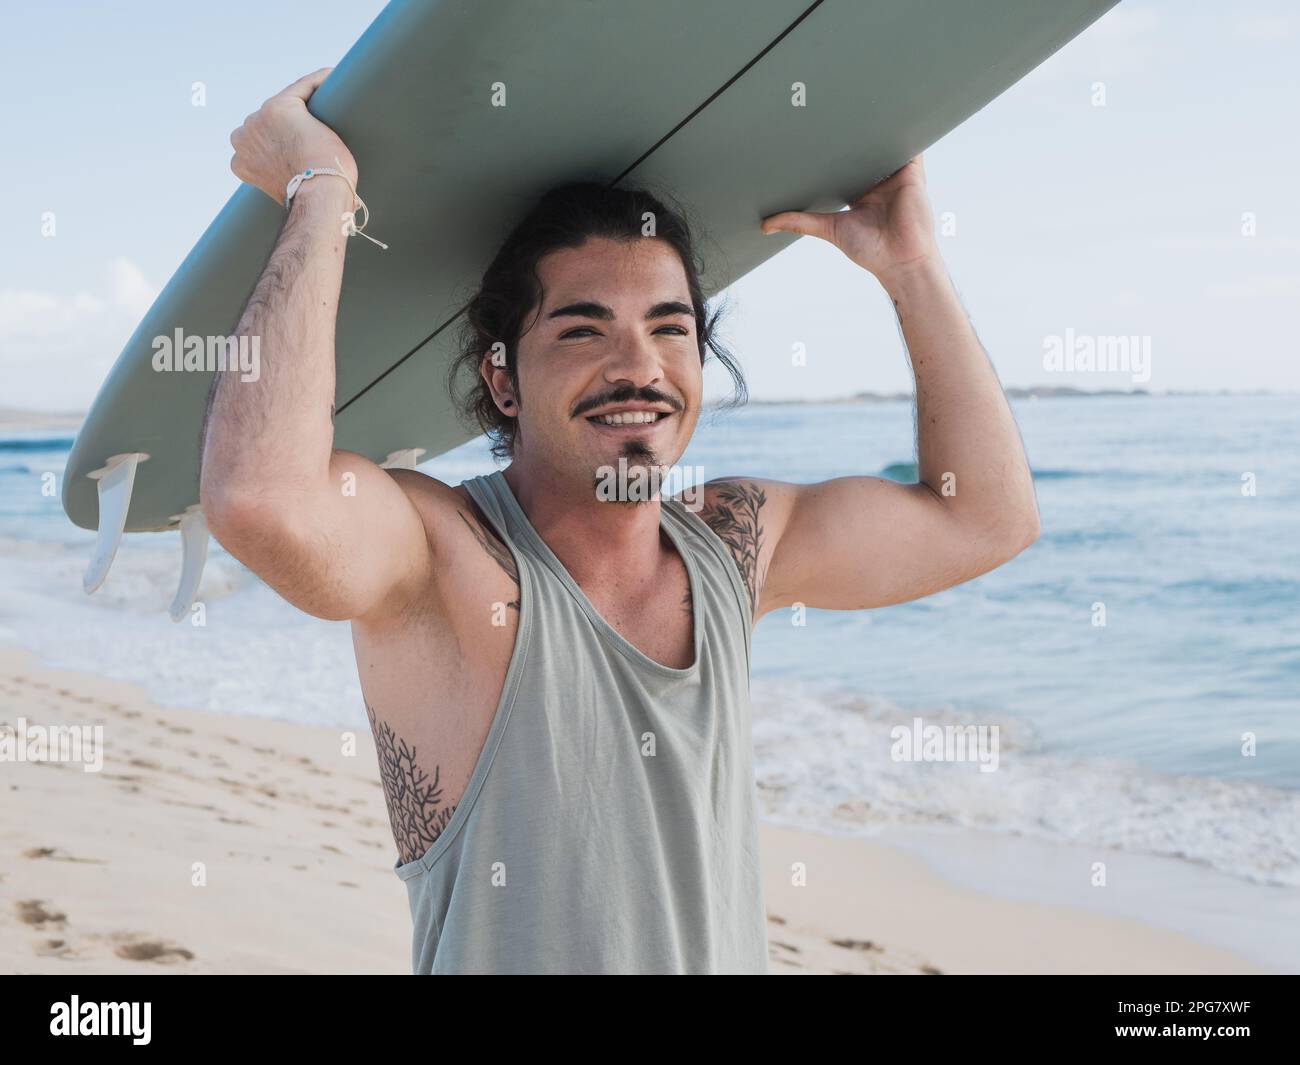 Ein hispanischer Surfer, der am Strand steht und sein Surfbrett hält Stockfoto